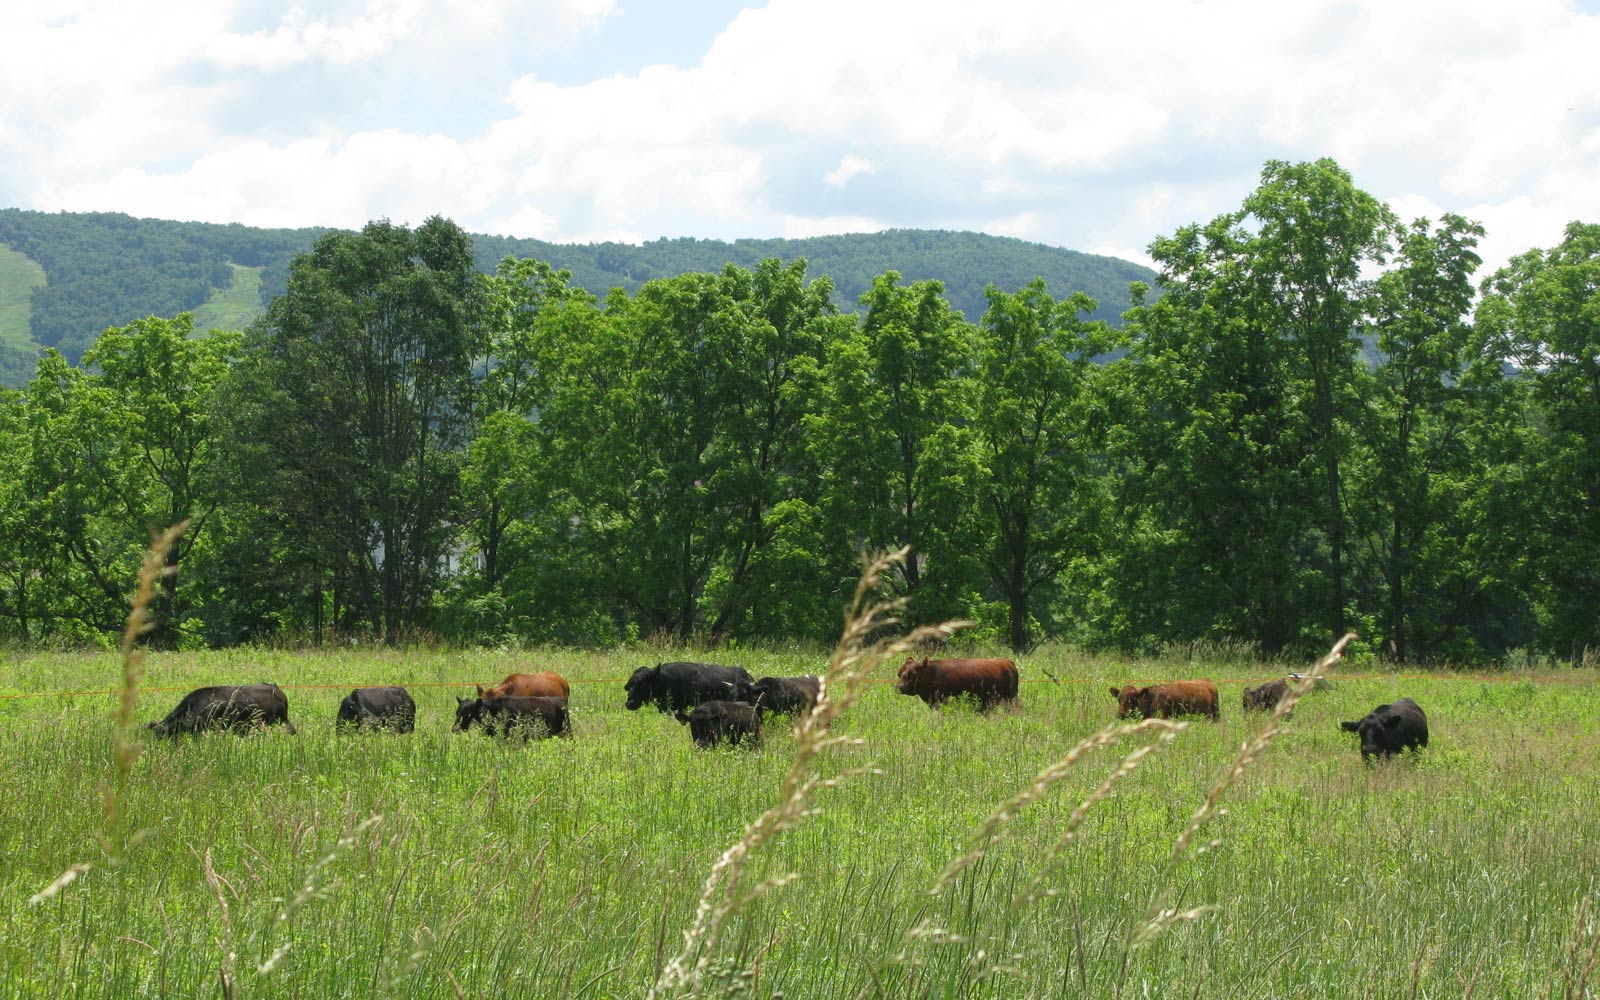 vernon valley farm - cows grazing far away